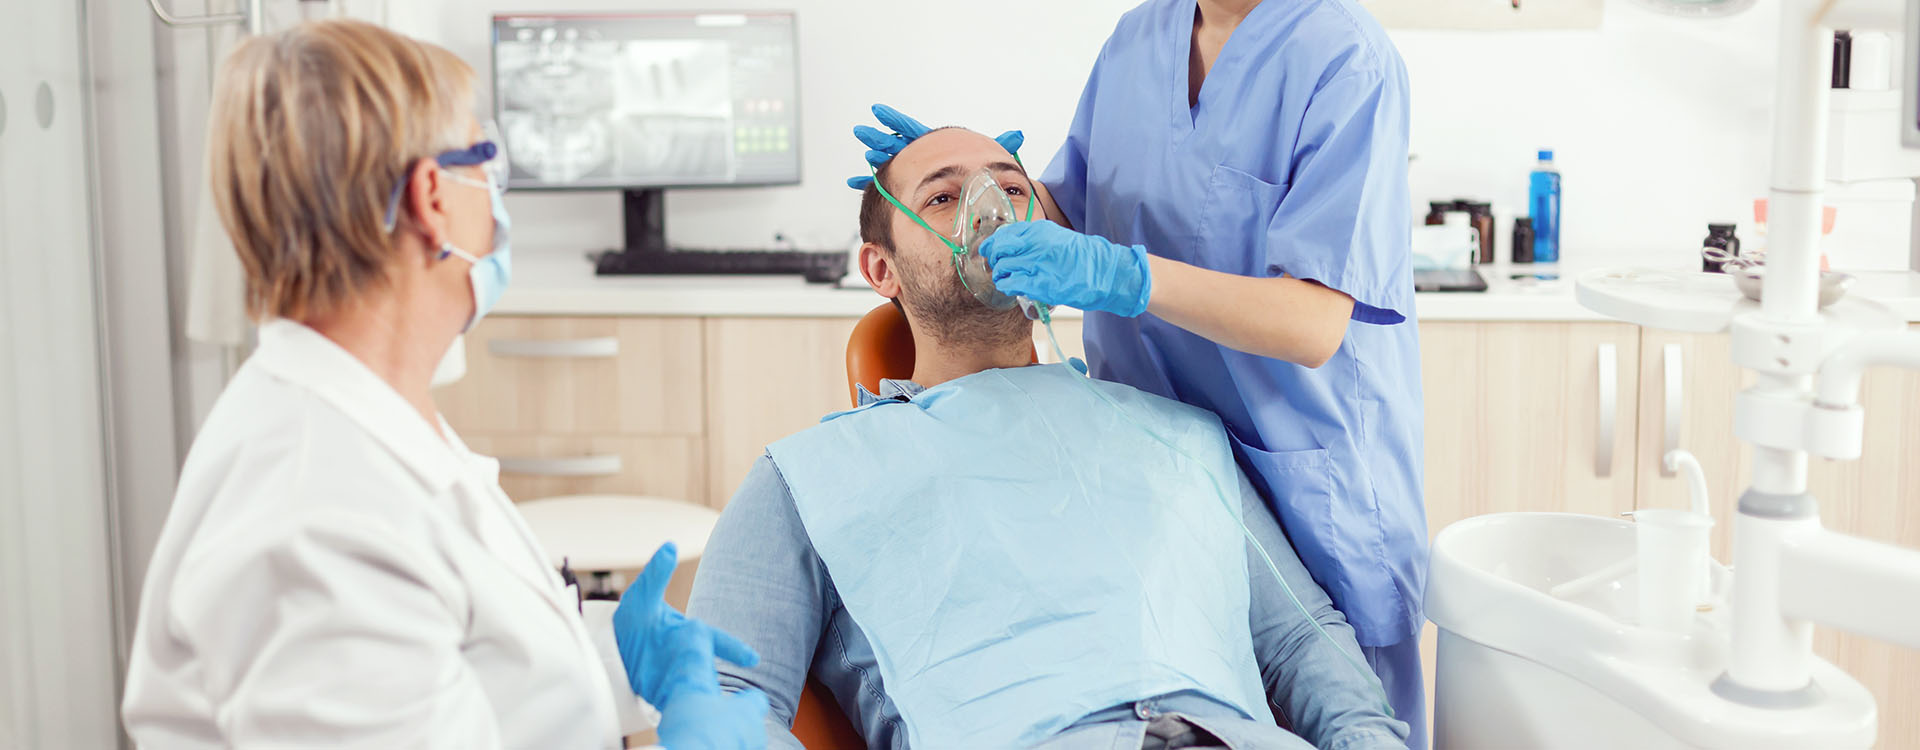 Clínica Dental Andrea Compte, tu Centro Odontológico especializado. Cirugía bucal en Alcalá de Xivert. Dentista preparando al paciente antes de la cirugía.